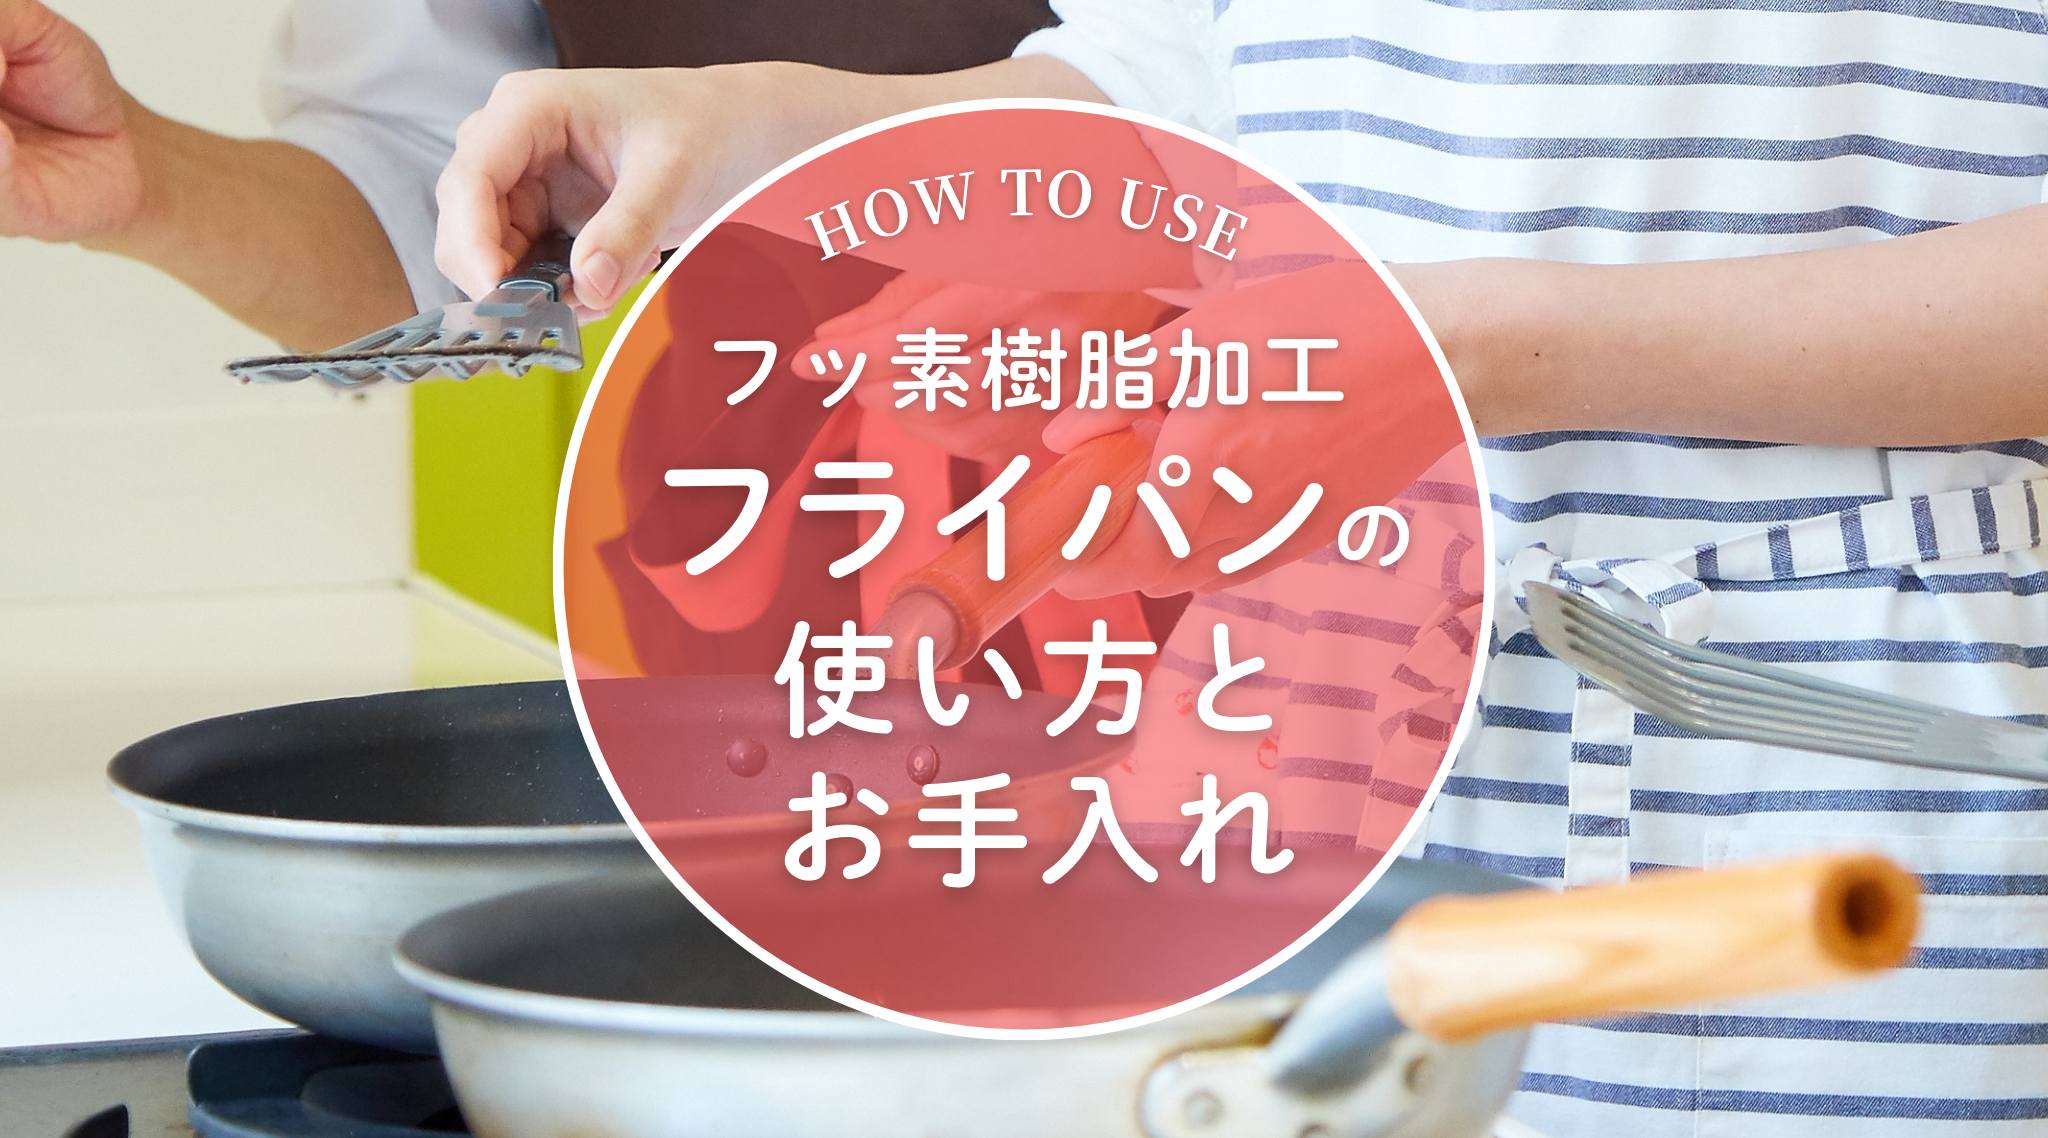 記事「［NHKテキストきょうの料理ビギナーズ 8月号 広告掲載］お料理教室の先生がつくったレトルトシリーズ」のイメージ画像です